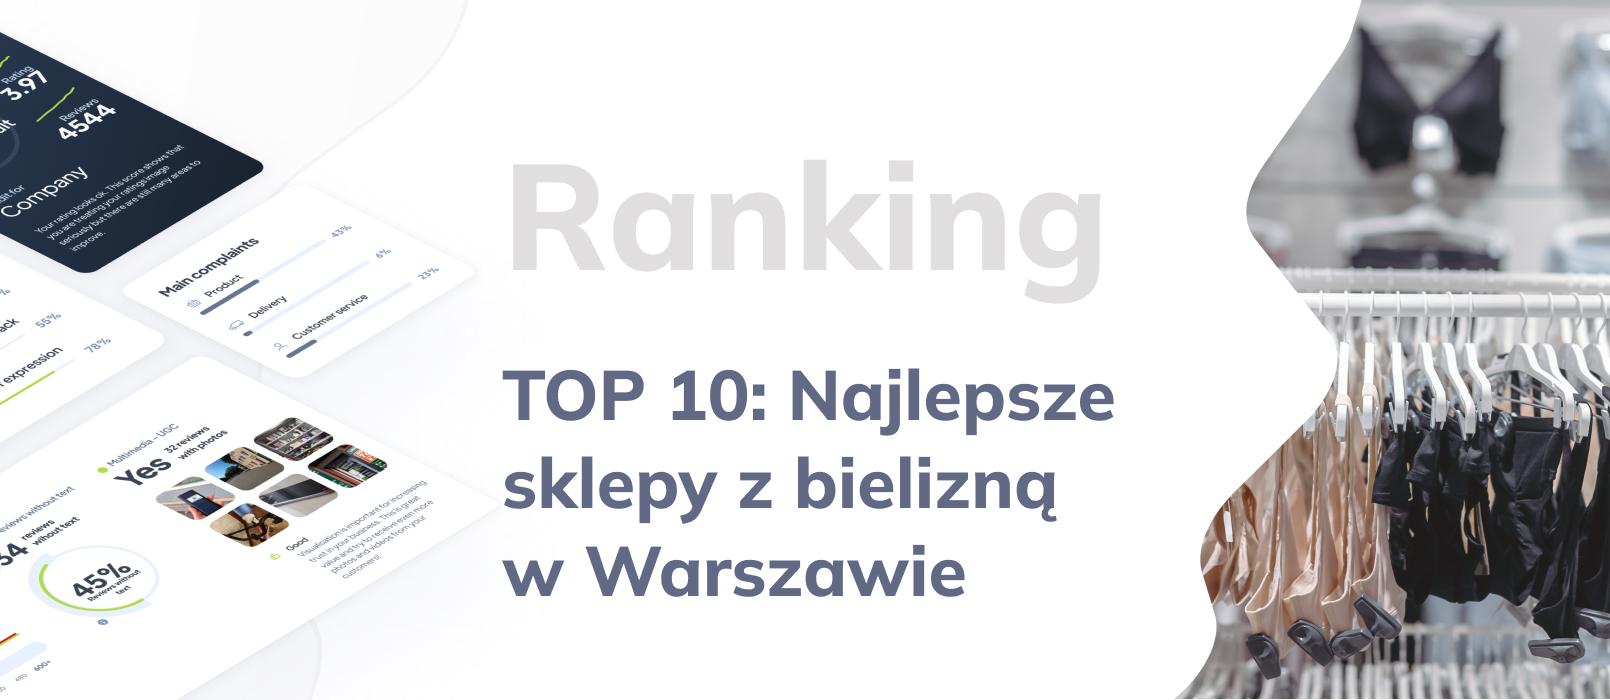 Najlepsze sklepy z bielizną w Warszawie - TOP 10